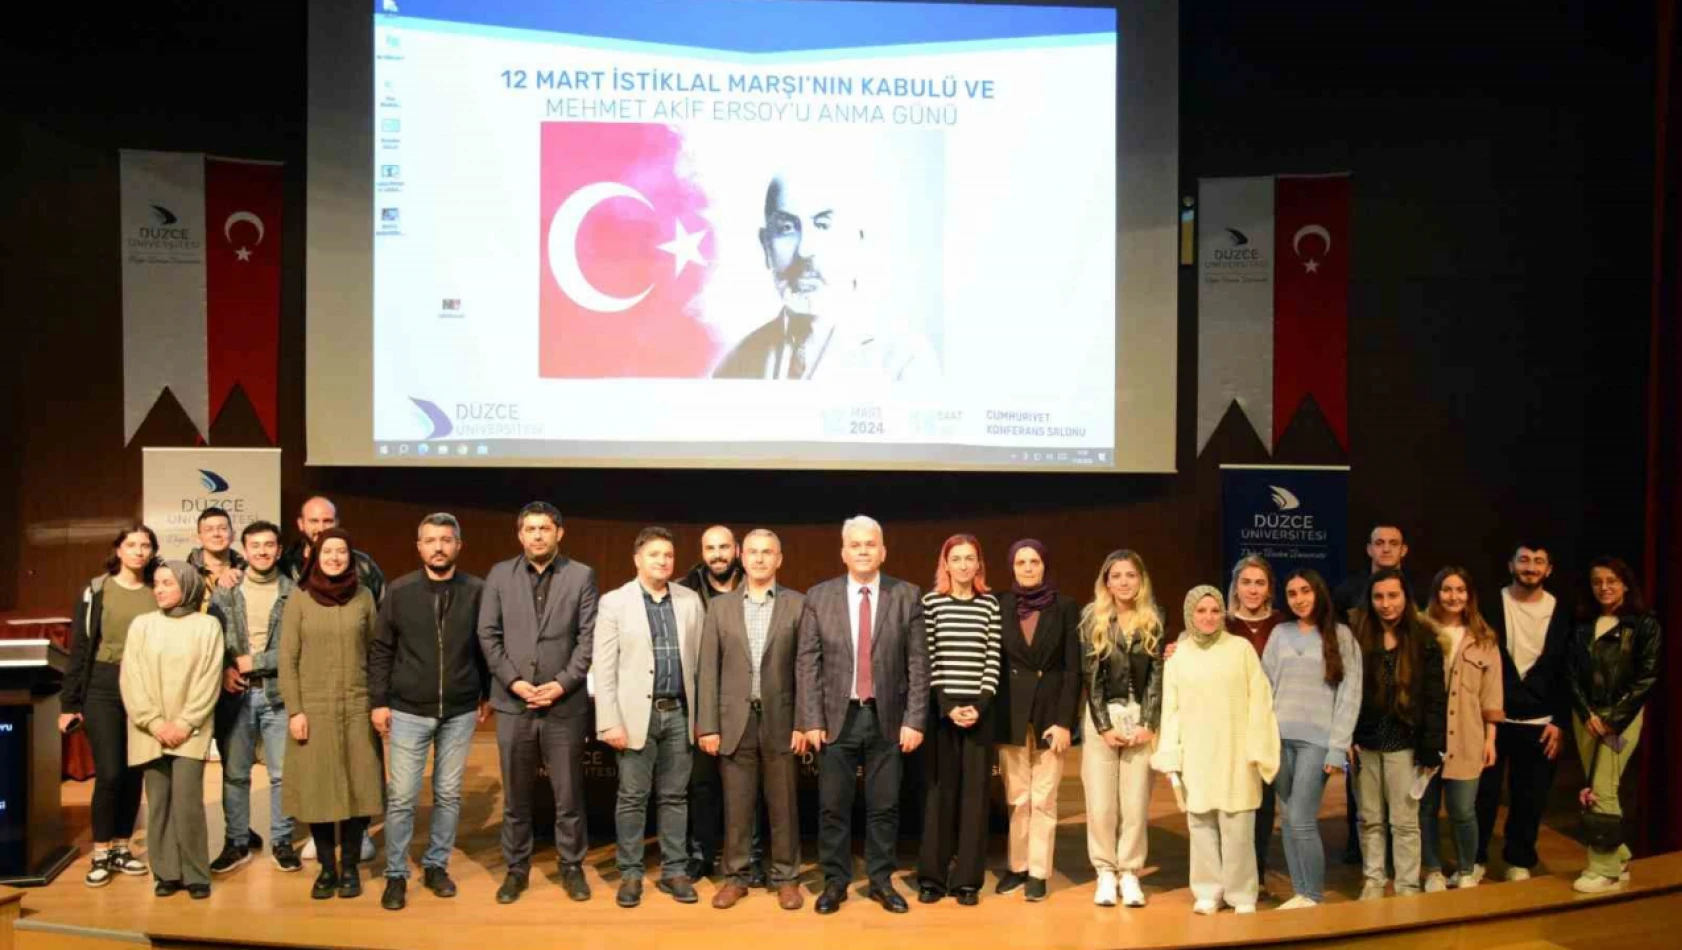 İstiklal Marşı'nın kabulü ve Mehmet Akif Ersoy anıldı